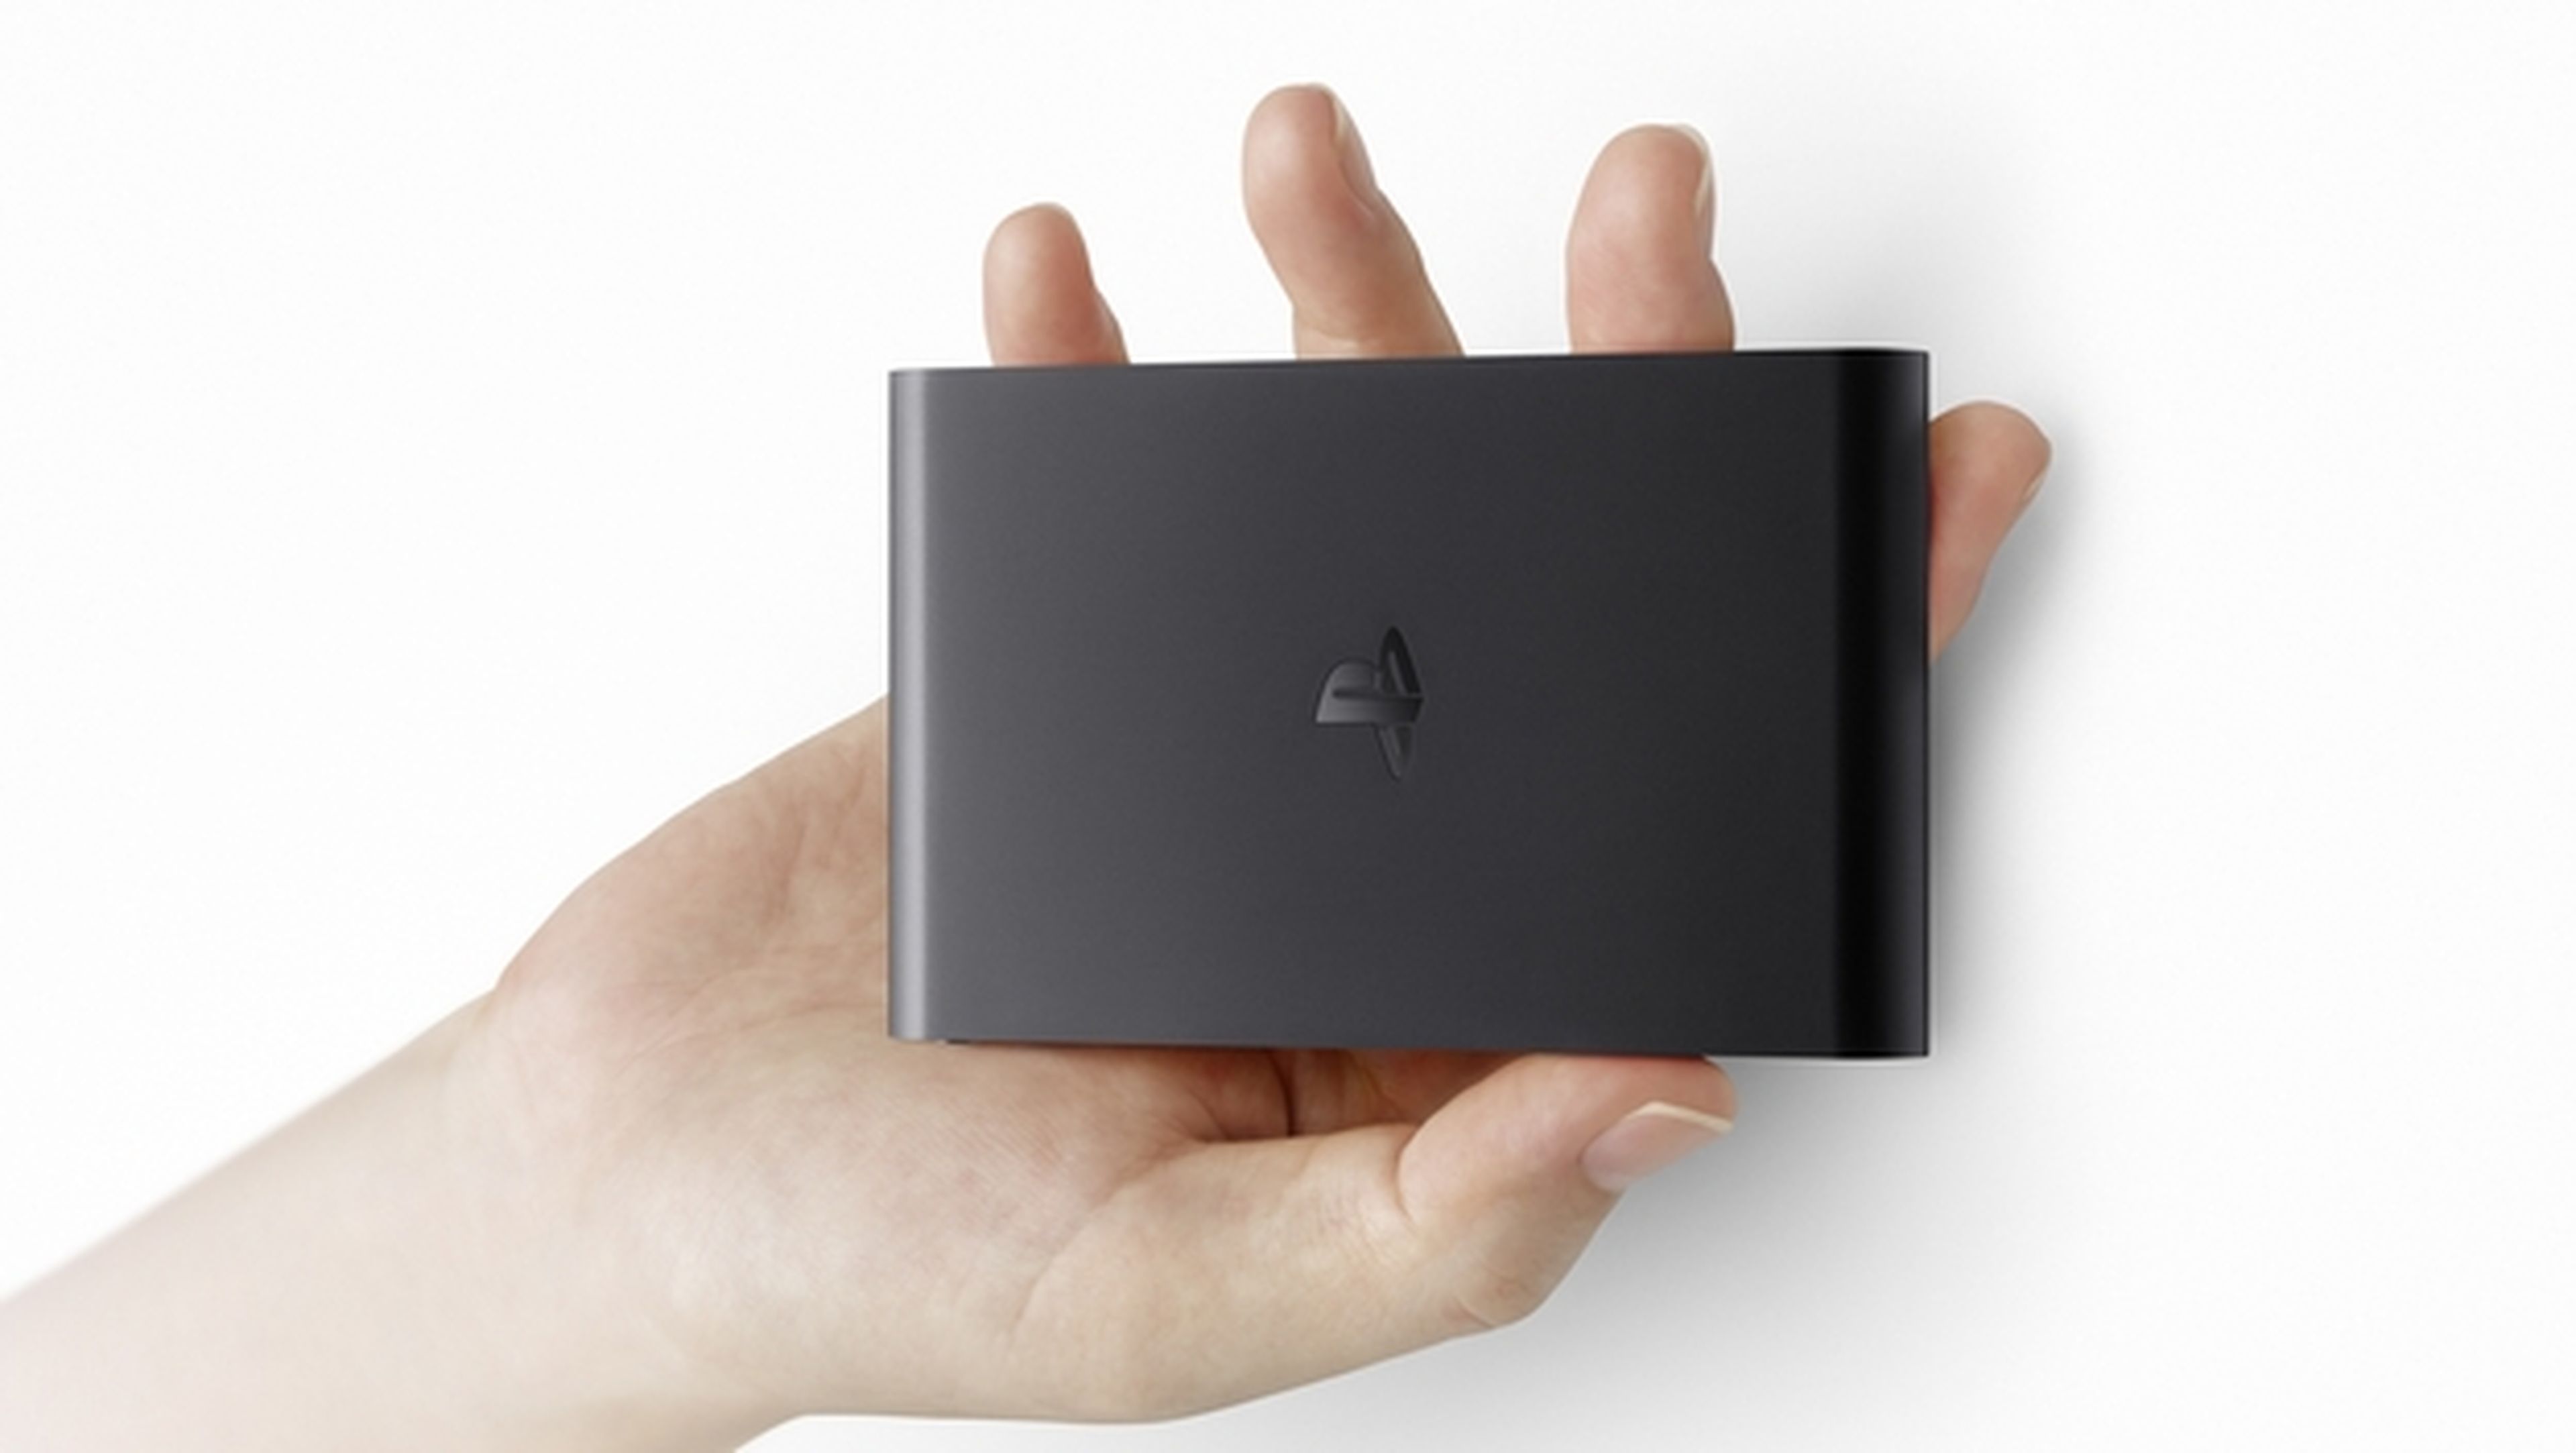 PlayStation TV de Sony: nueva microconsola de streaming permite jugar a juegos de PS4, PS3 en la nube con PlayStation Now, PS Vita, PSP, PS One, costará 99 €.